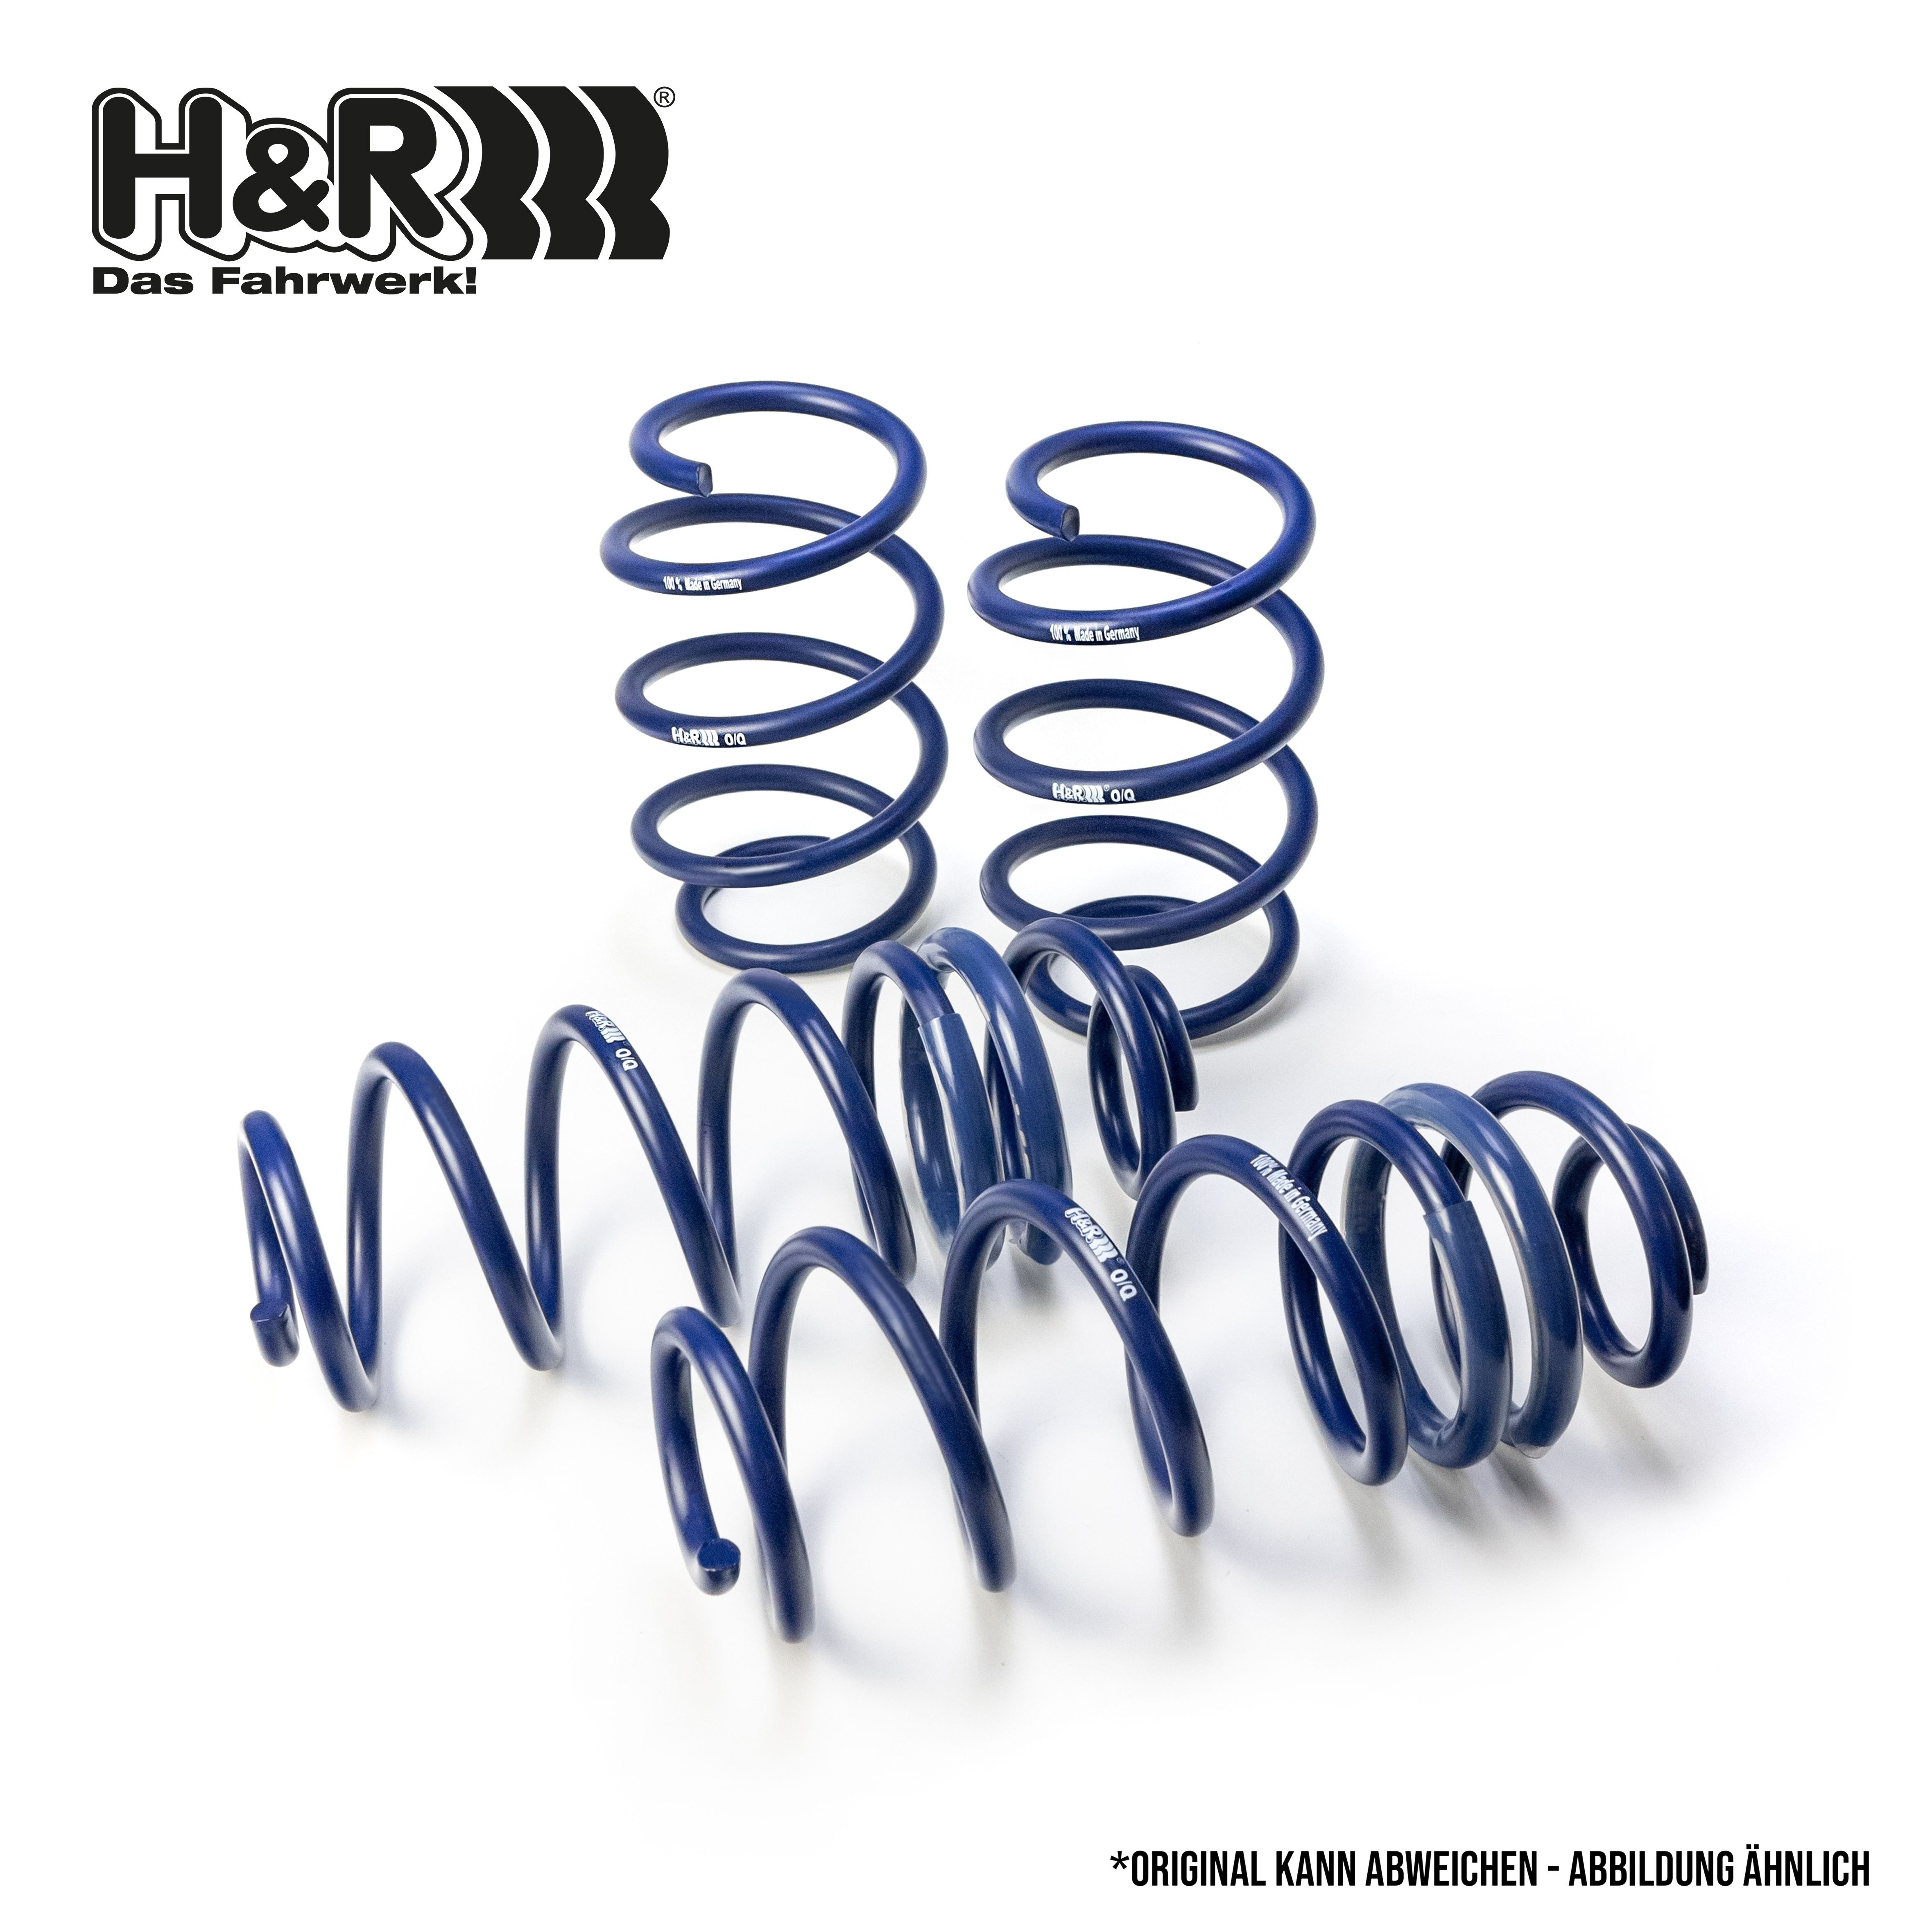 H&R Spring kit 29757-1